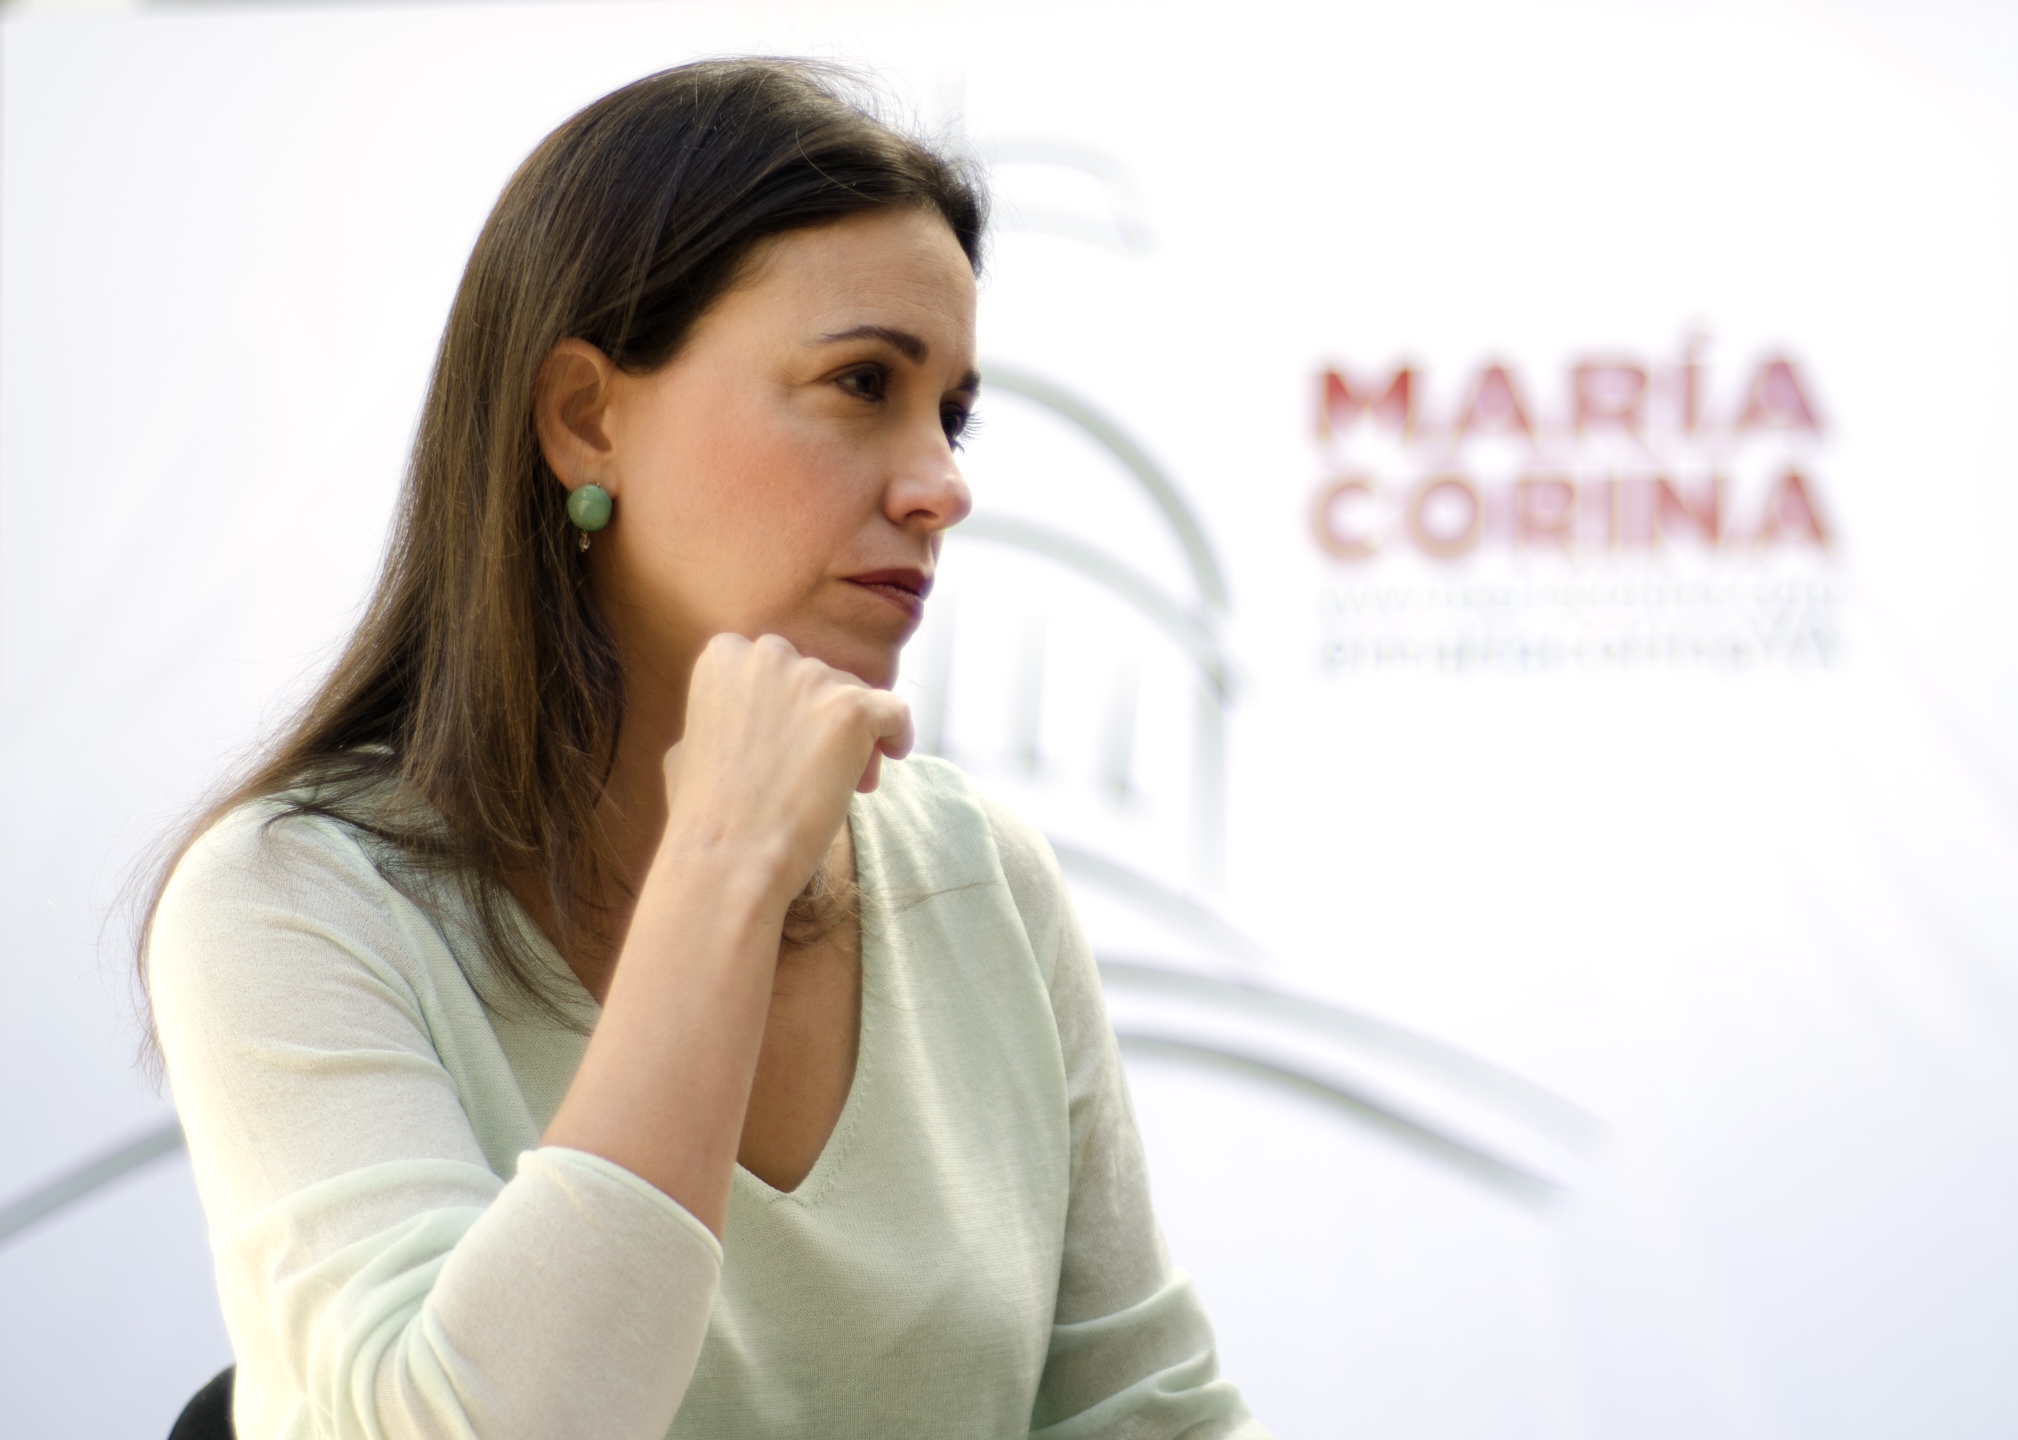 ¿Es María Corina la líder político del momento? – Por Lcdo. Humberto J. Saras G.